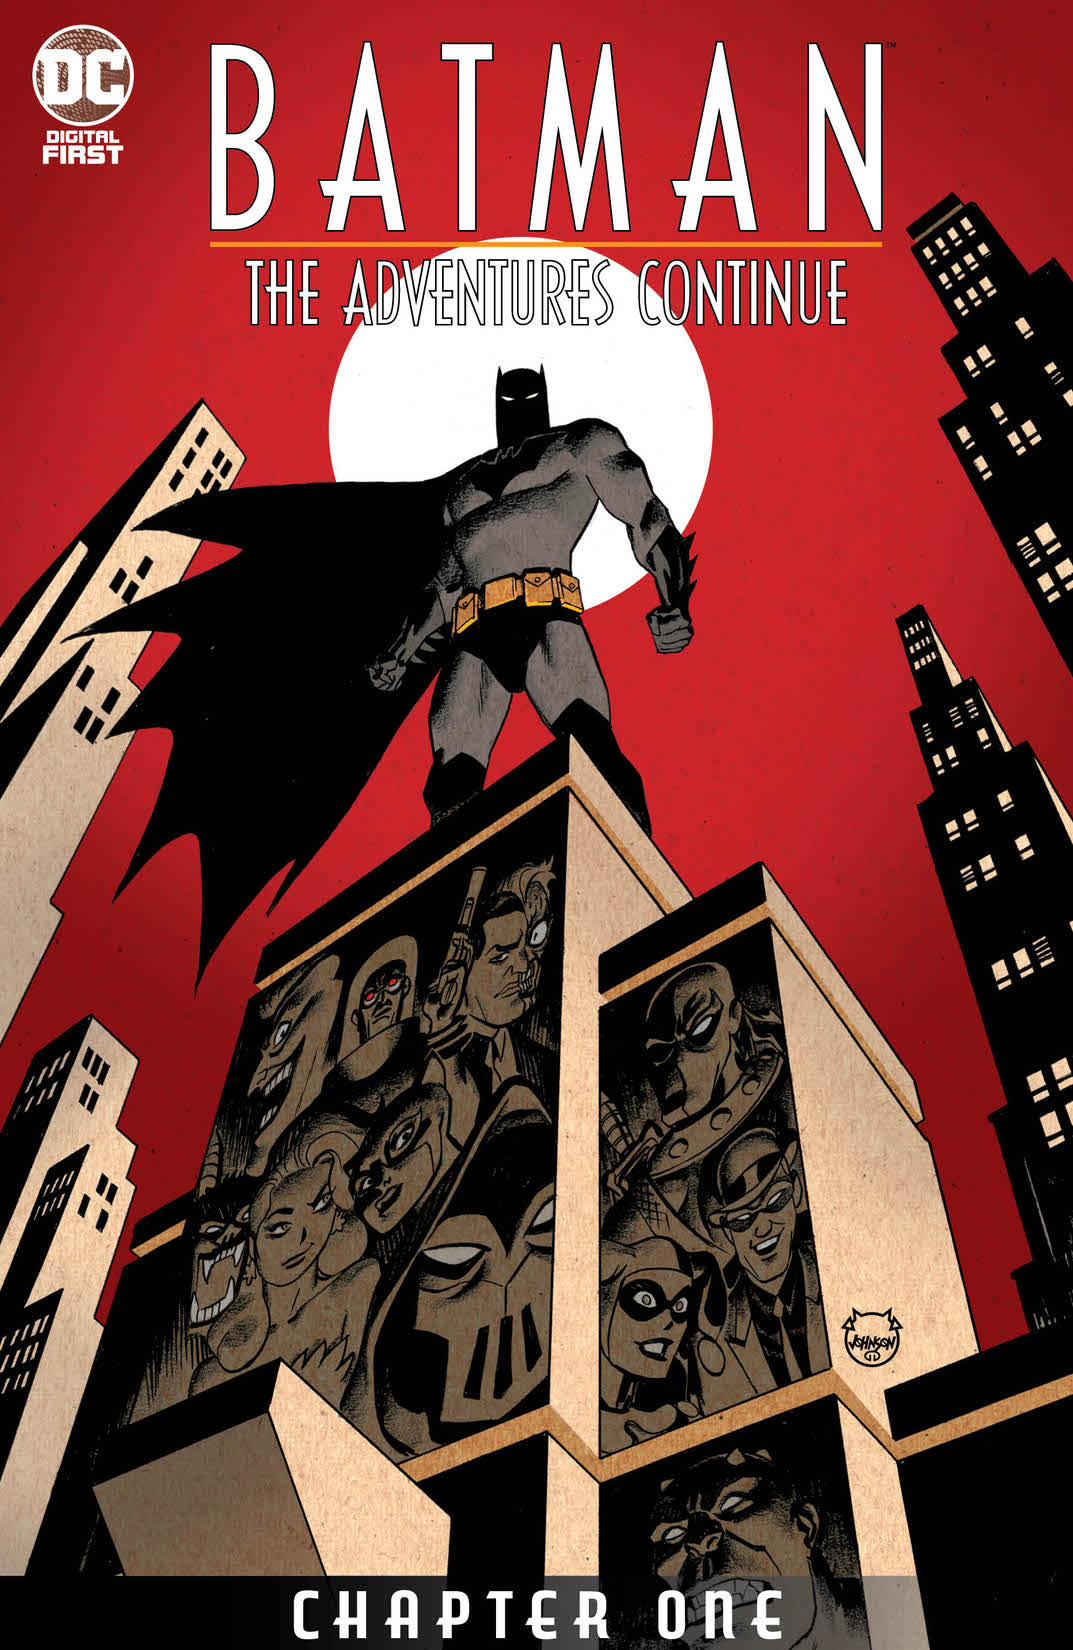 Batman: The Adventures Continue #1 preview images